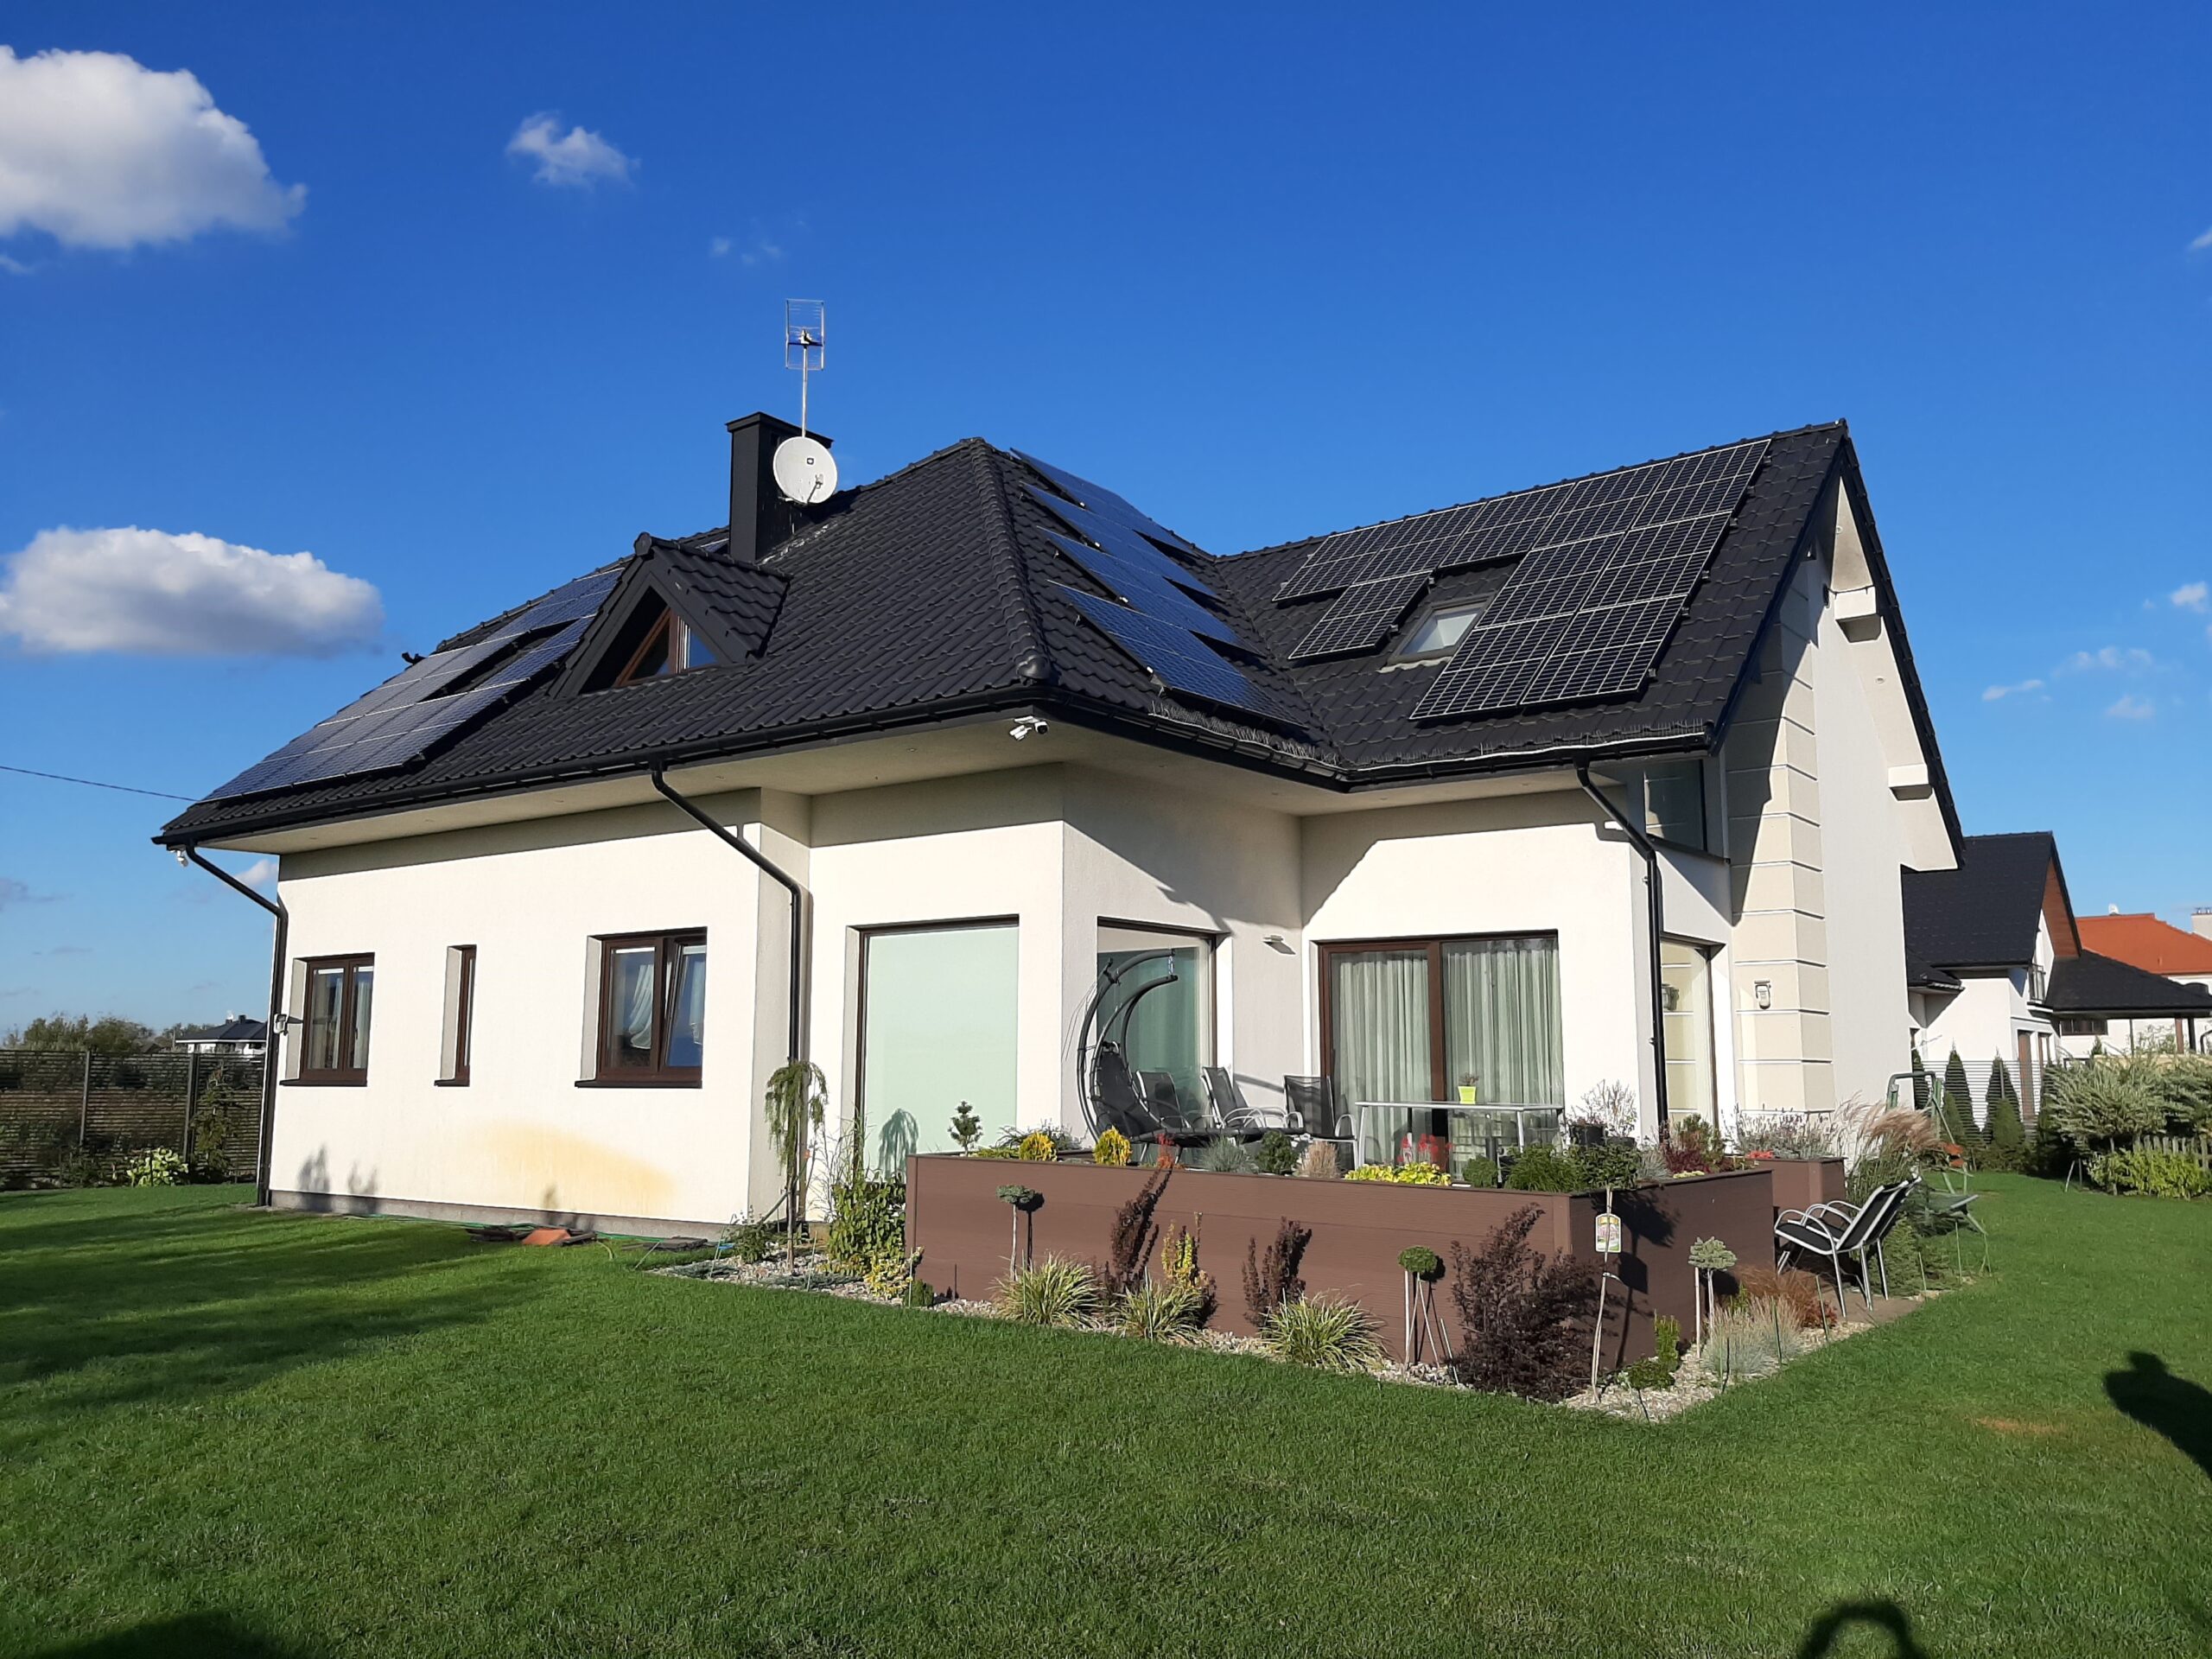 Instalacja fotowoltaiczna na dachu skośnym - ilość paneli 28 - Moc instalacji 9.94 kWp